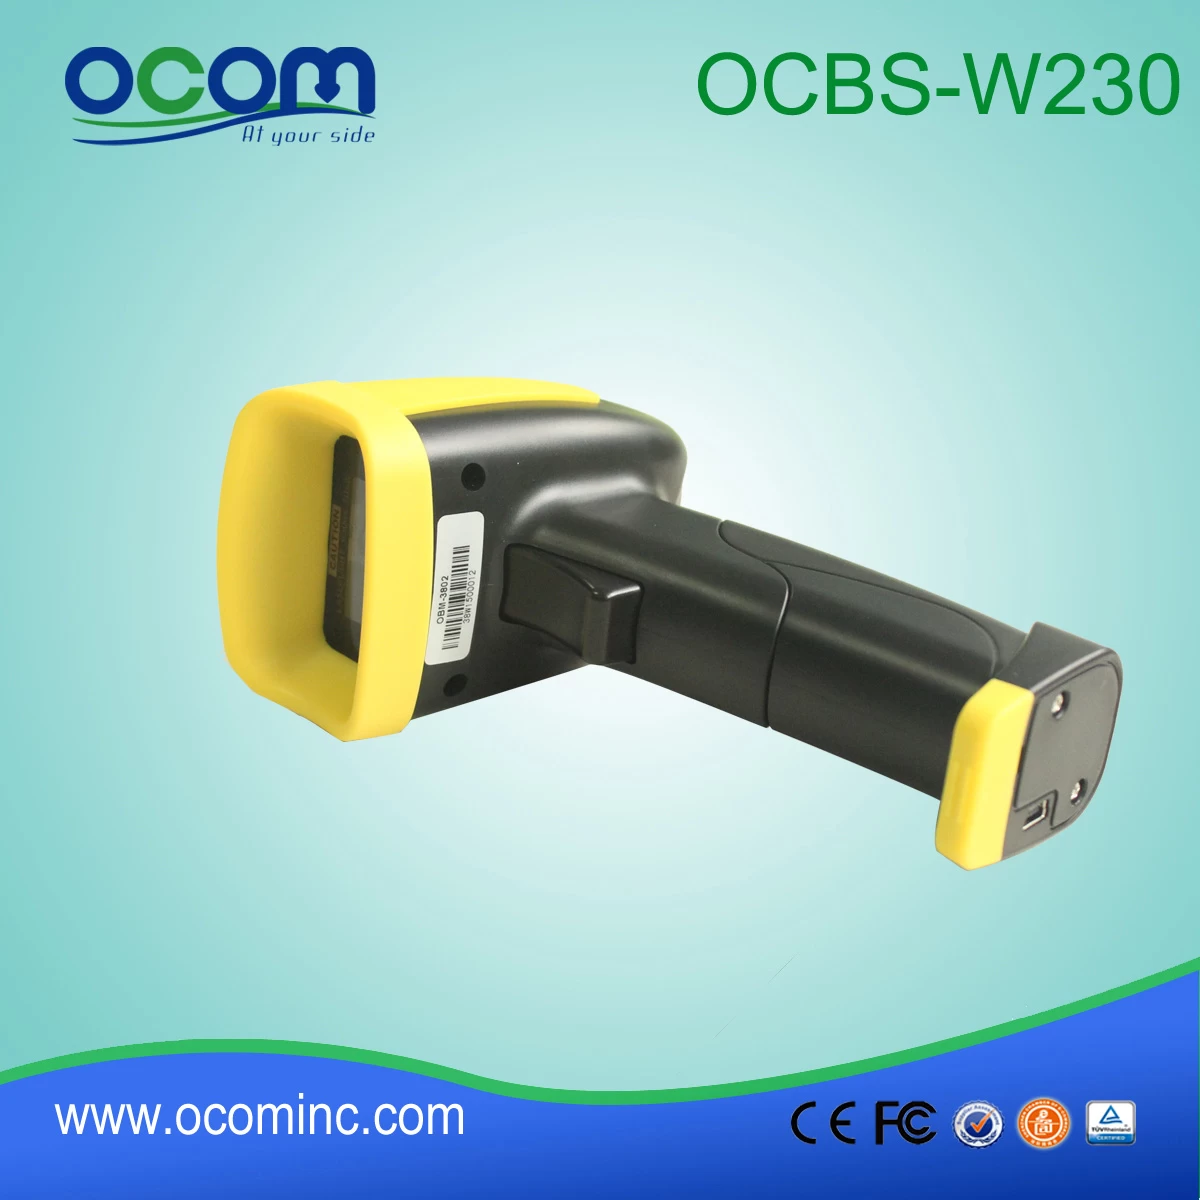 Handheld Wireless Laser Barcode Scanner module OCBS-W230